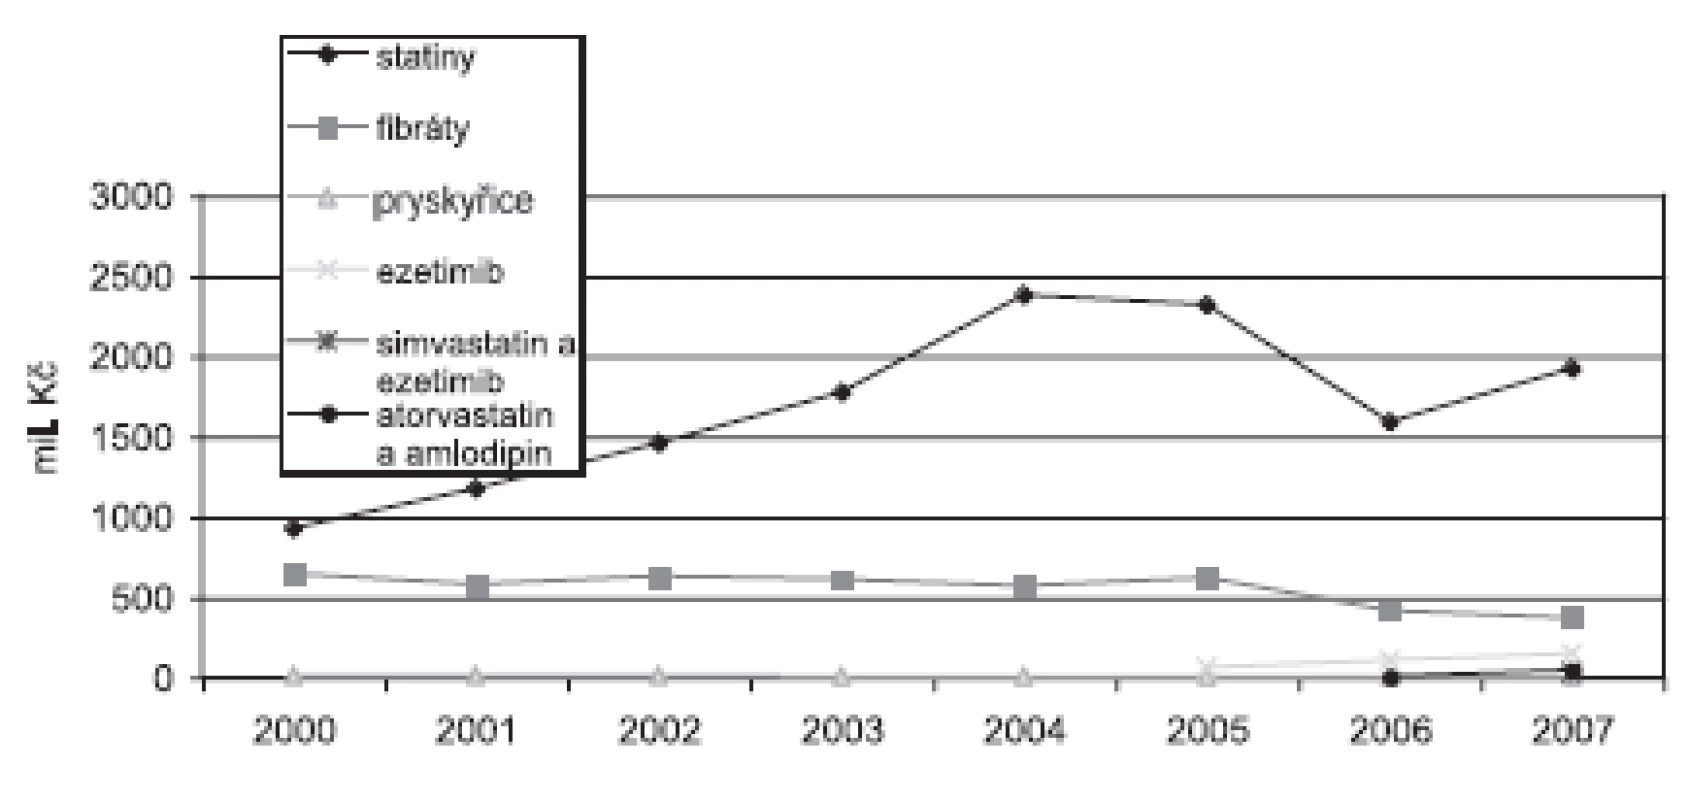 Náklady na hypolipidemika v České republice v letech 2000–2007 v mil. Kč (SÚKL)